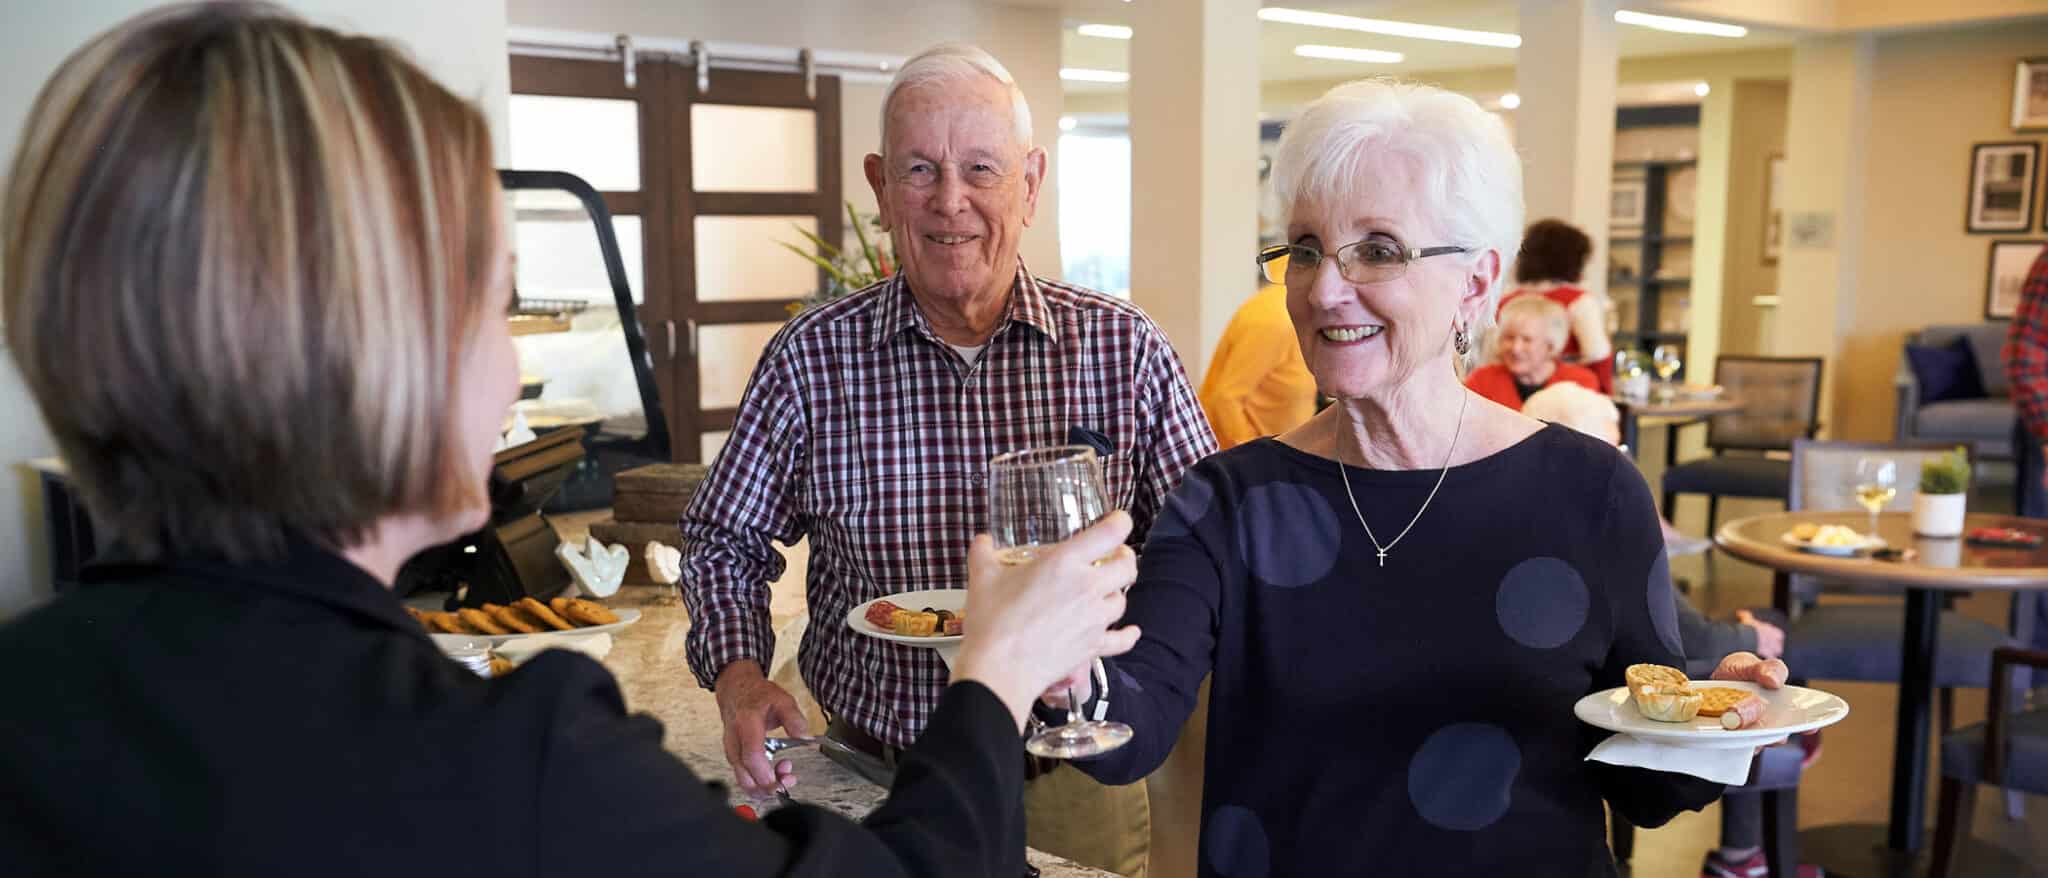 Residents enjoying wine and socializing